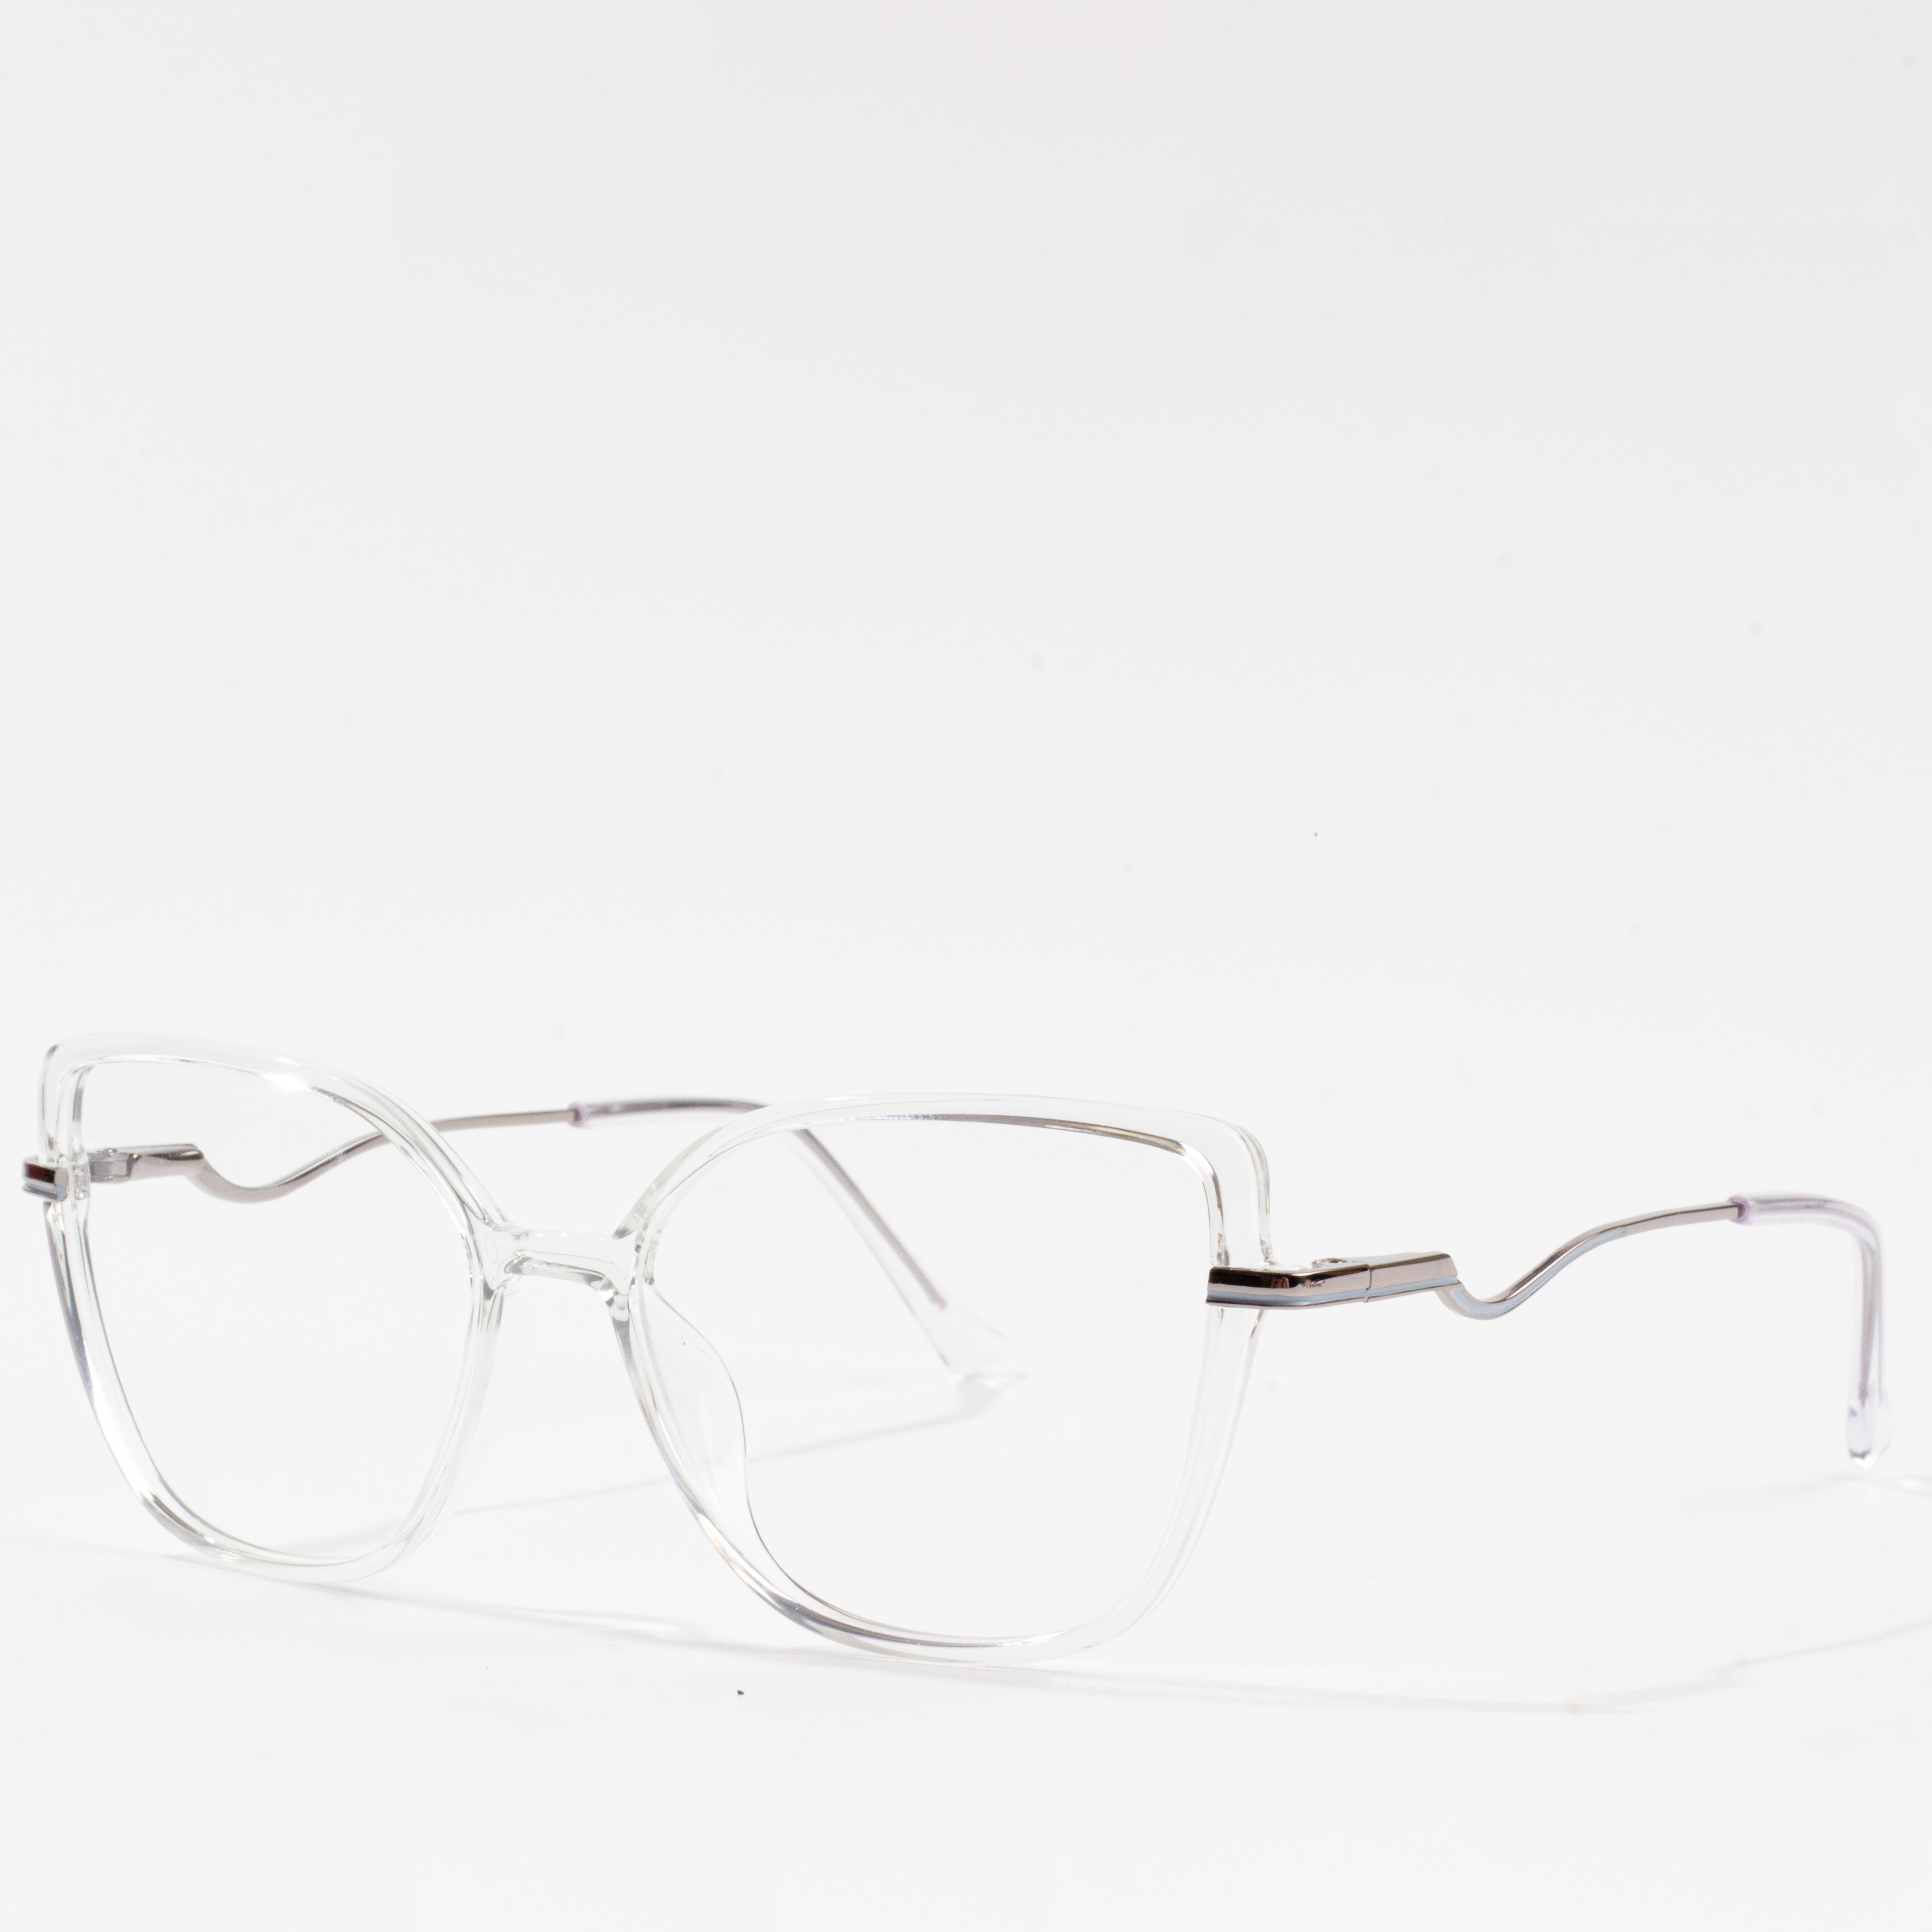 iring frame eyeglasses